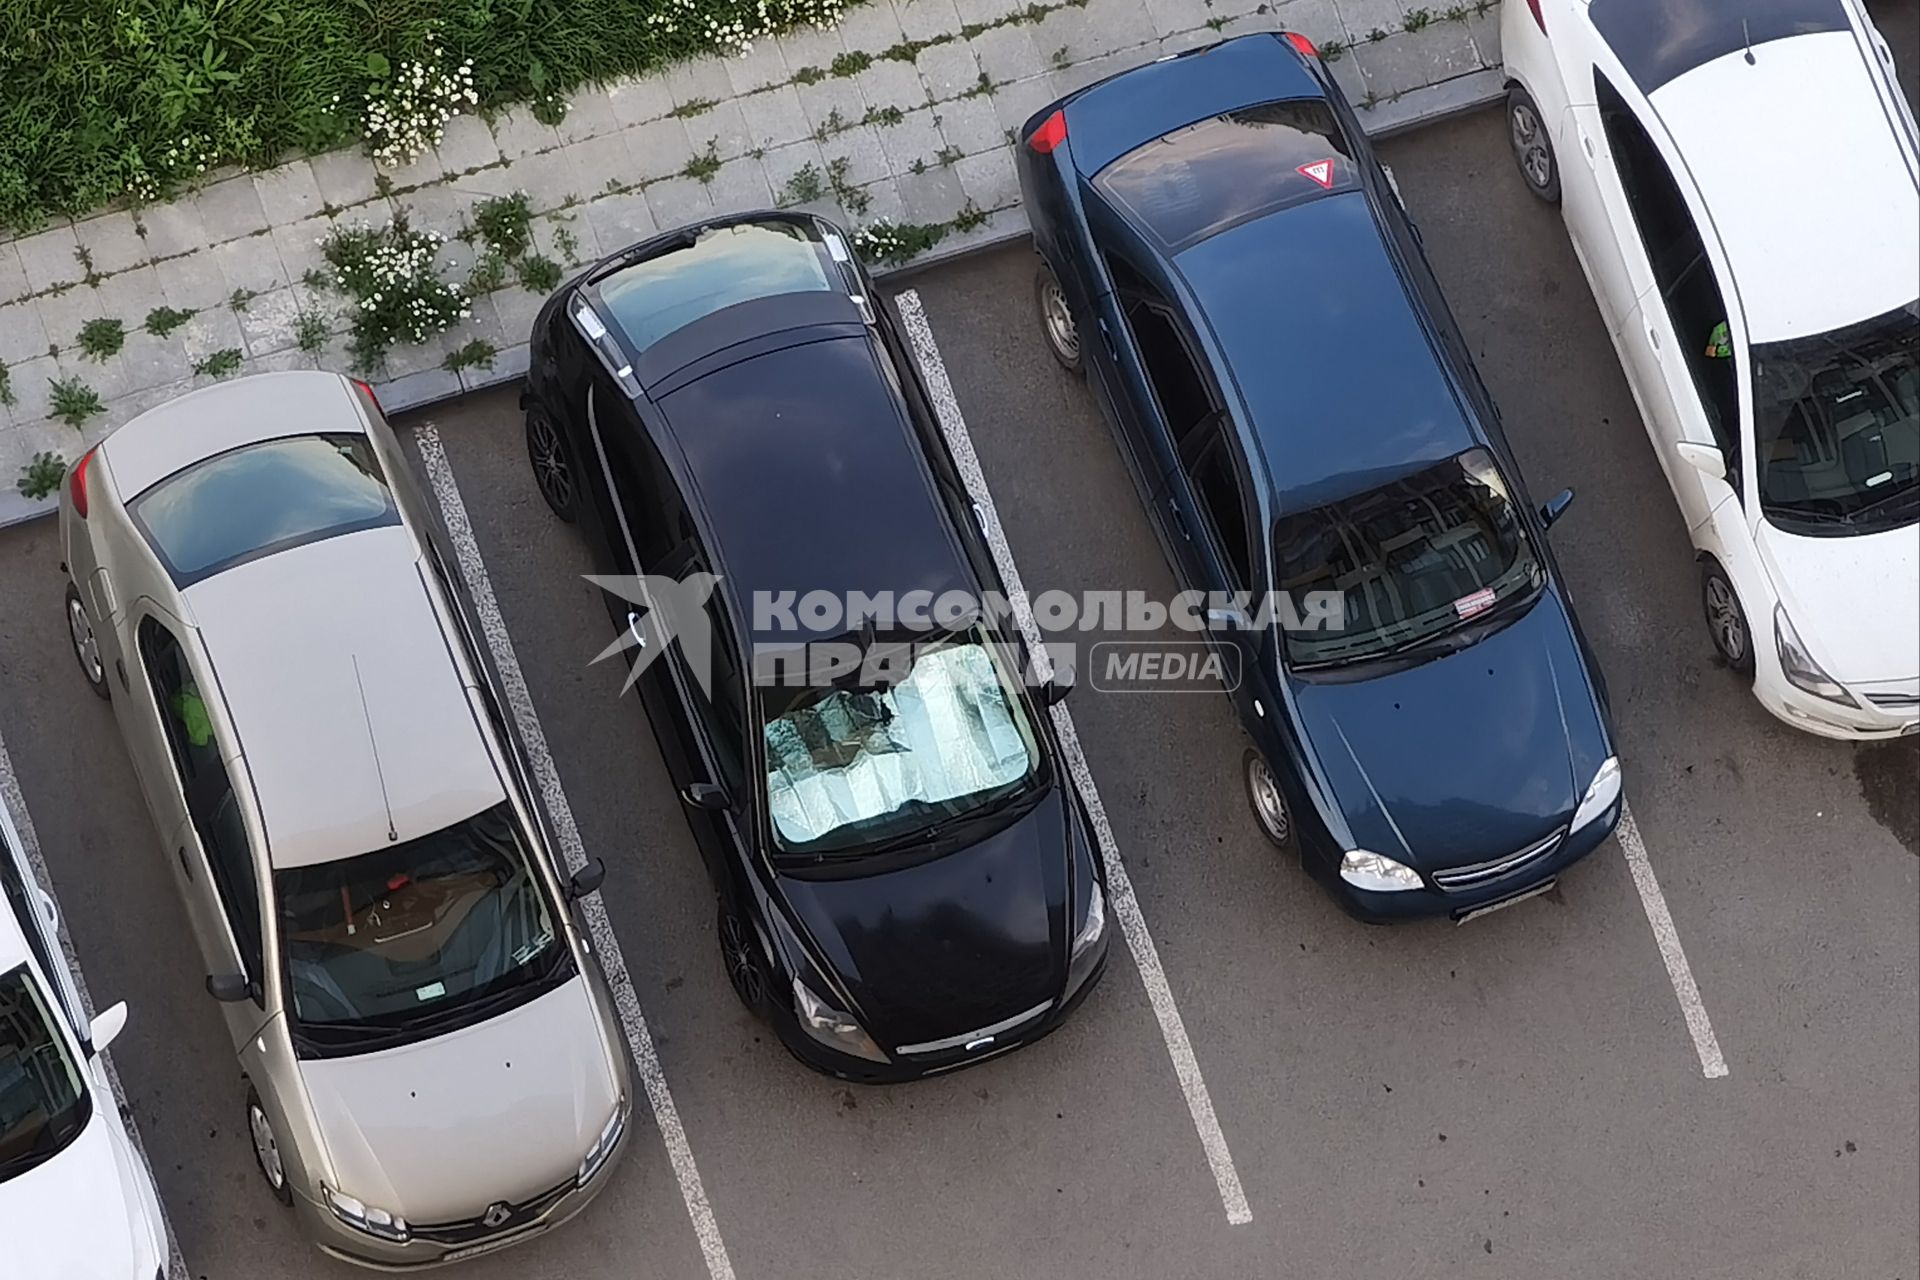 Екатеринбург. Автомобиль с солнцезащитным экраном на лобовом стекле